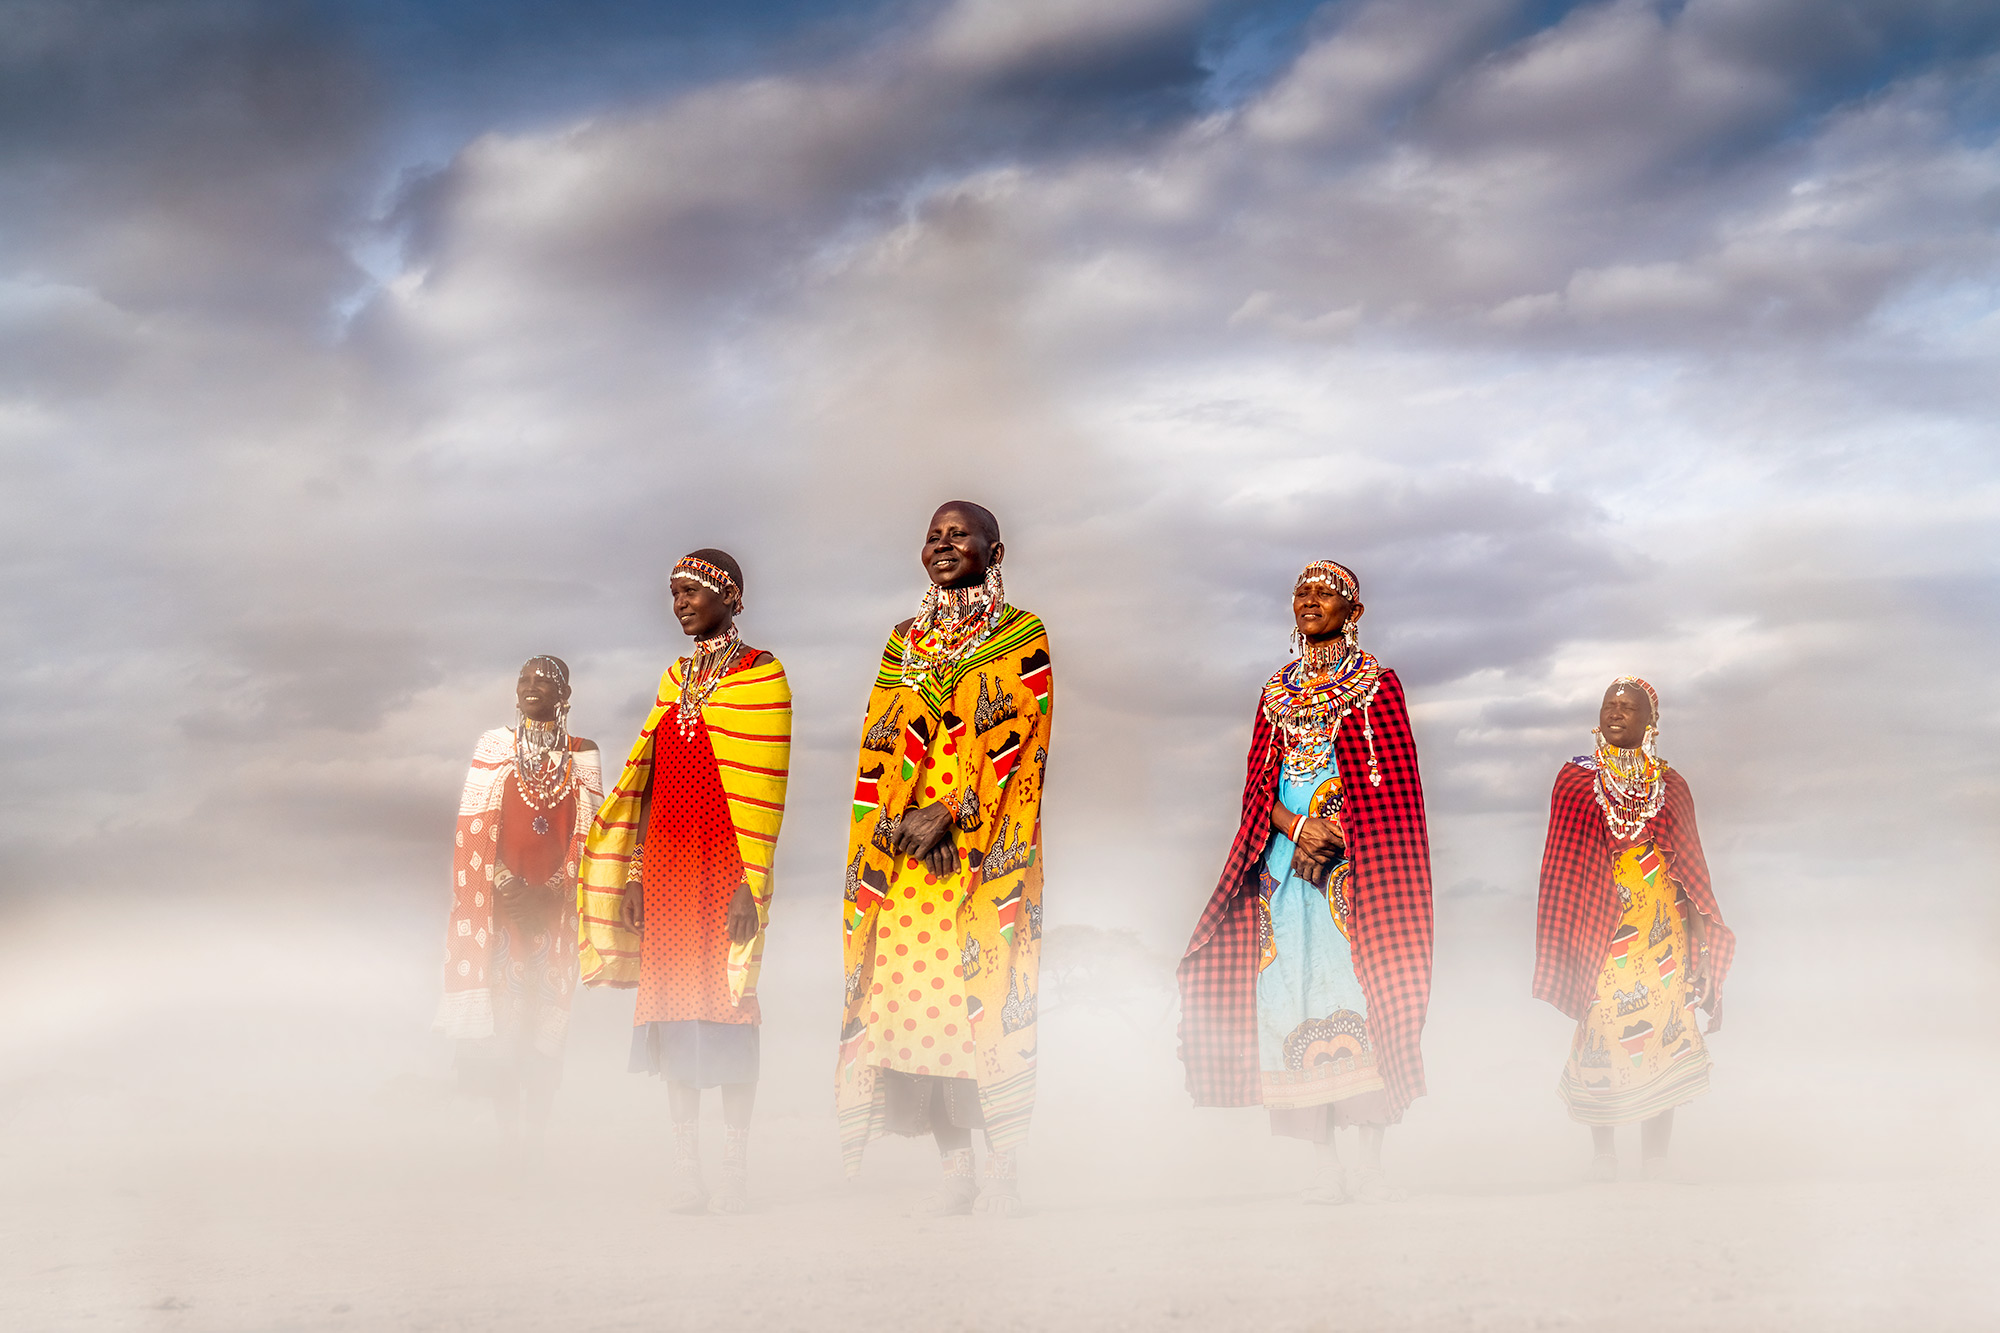 Massai Frauen im Staub - Fotografiert auf einer Fotoreise mit Benny Rebel Fotosafaris GmbH in Kenia.